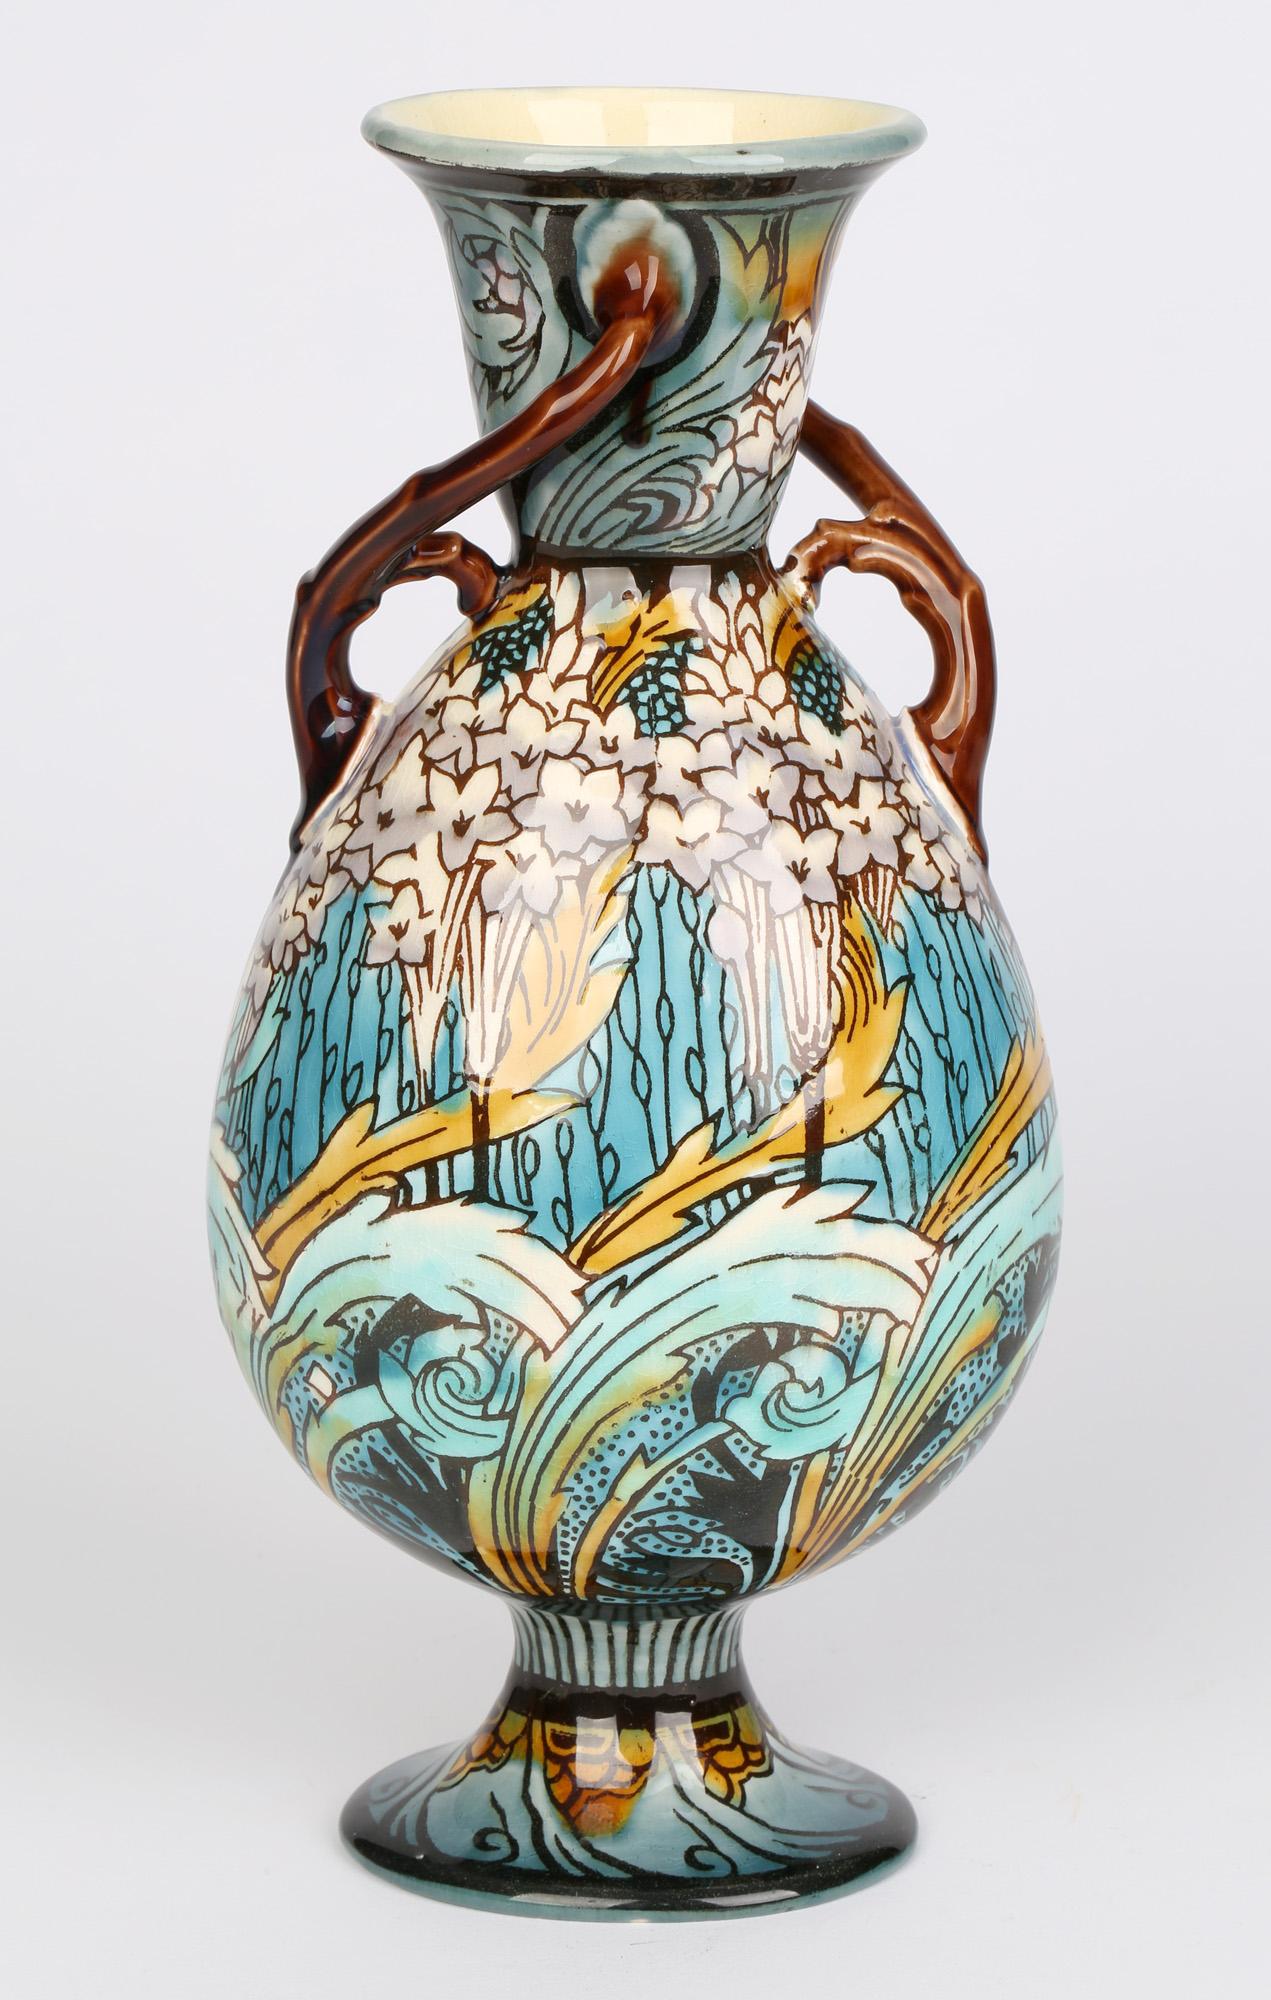 Glazed Minton Art Nouveau Floral Decorated Twin Handled Vase